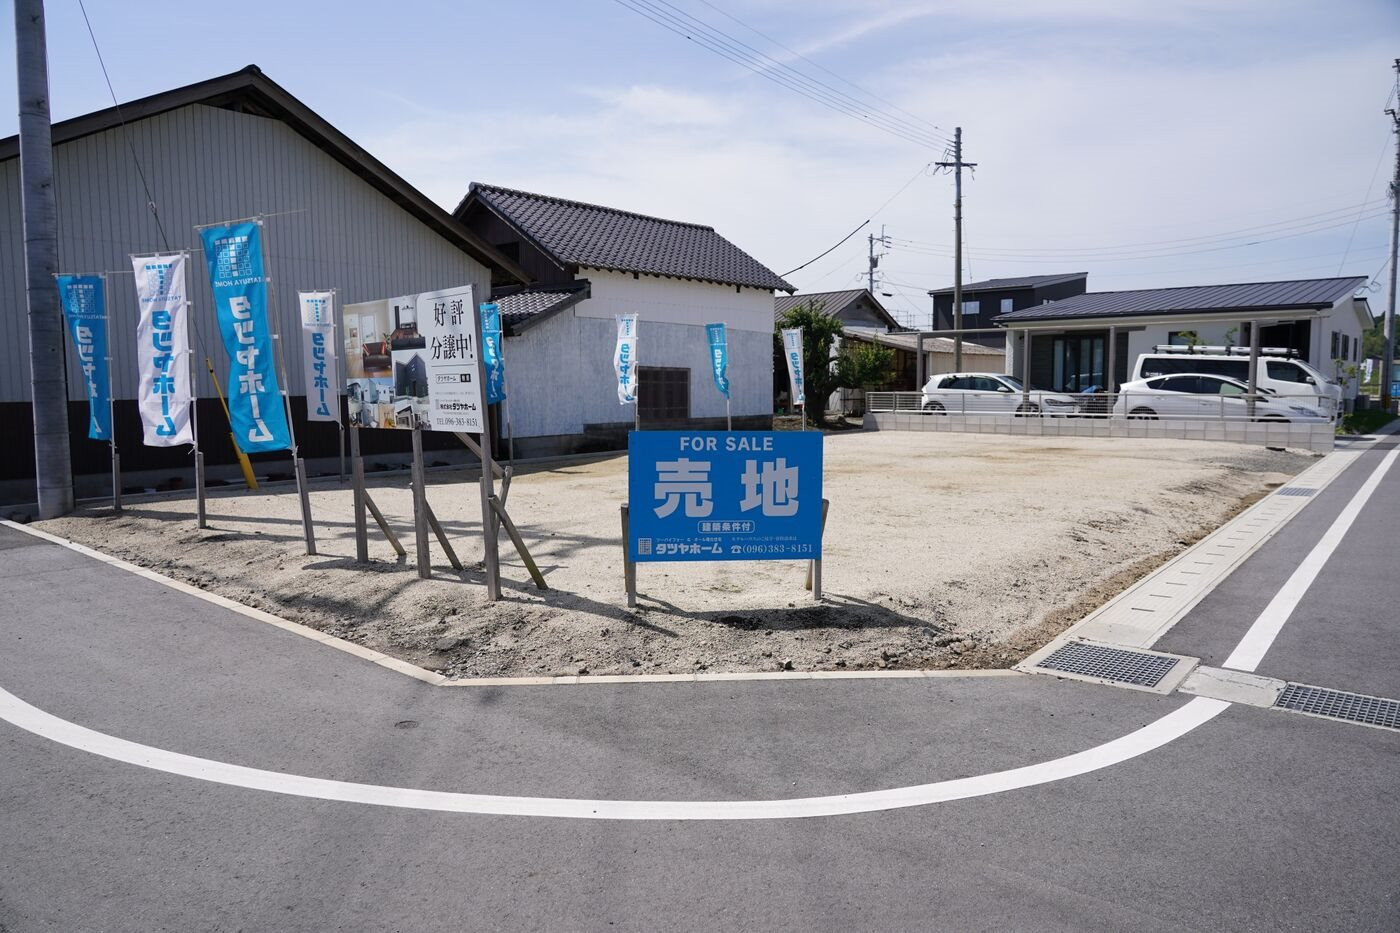 TSMC 'vật vã' ở Nhật Bản: Đau đầu vì cơ sở hạ tầng yếu kém, nạn đầu cơ nhà đất, người dân thì chống đối vì sợ thiếu điện nước và ô nhiễm - Ảnh 4.